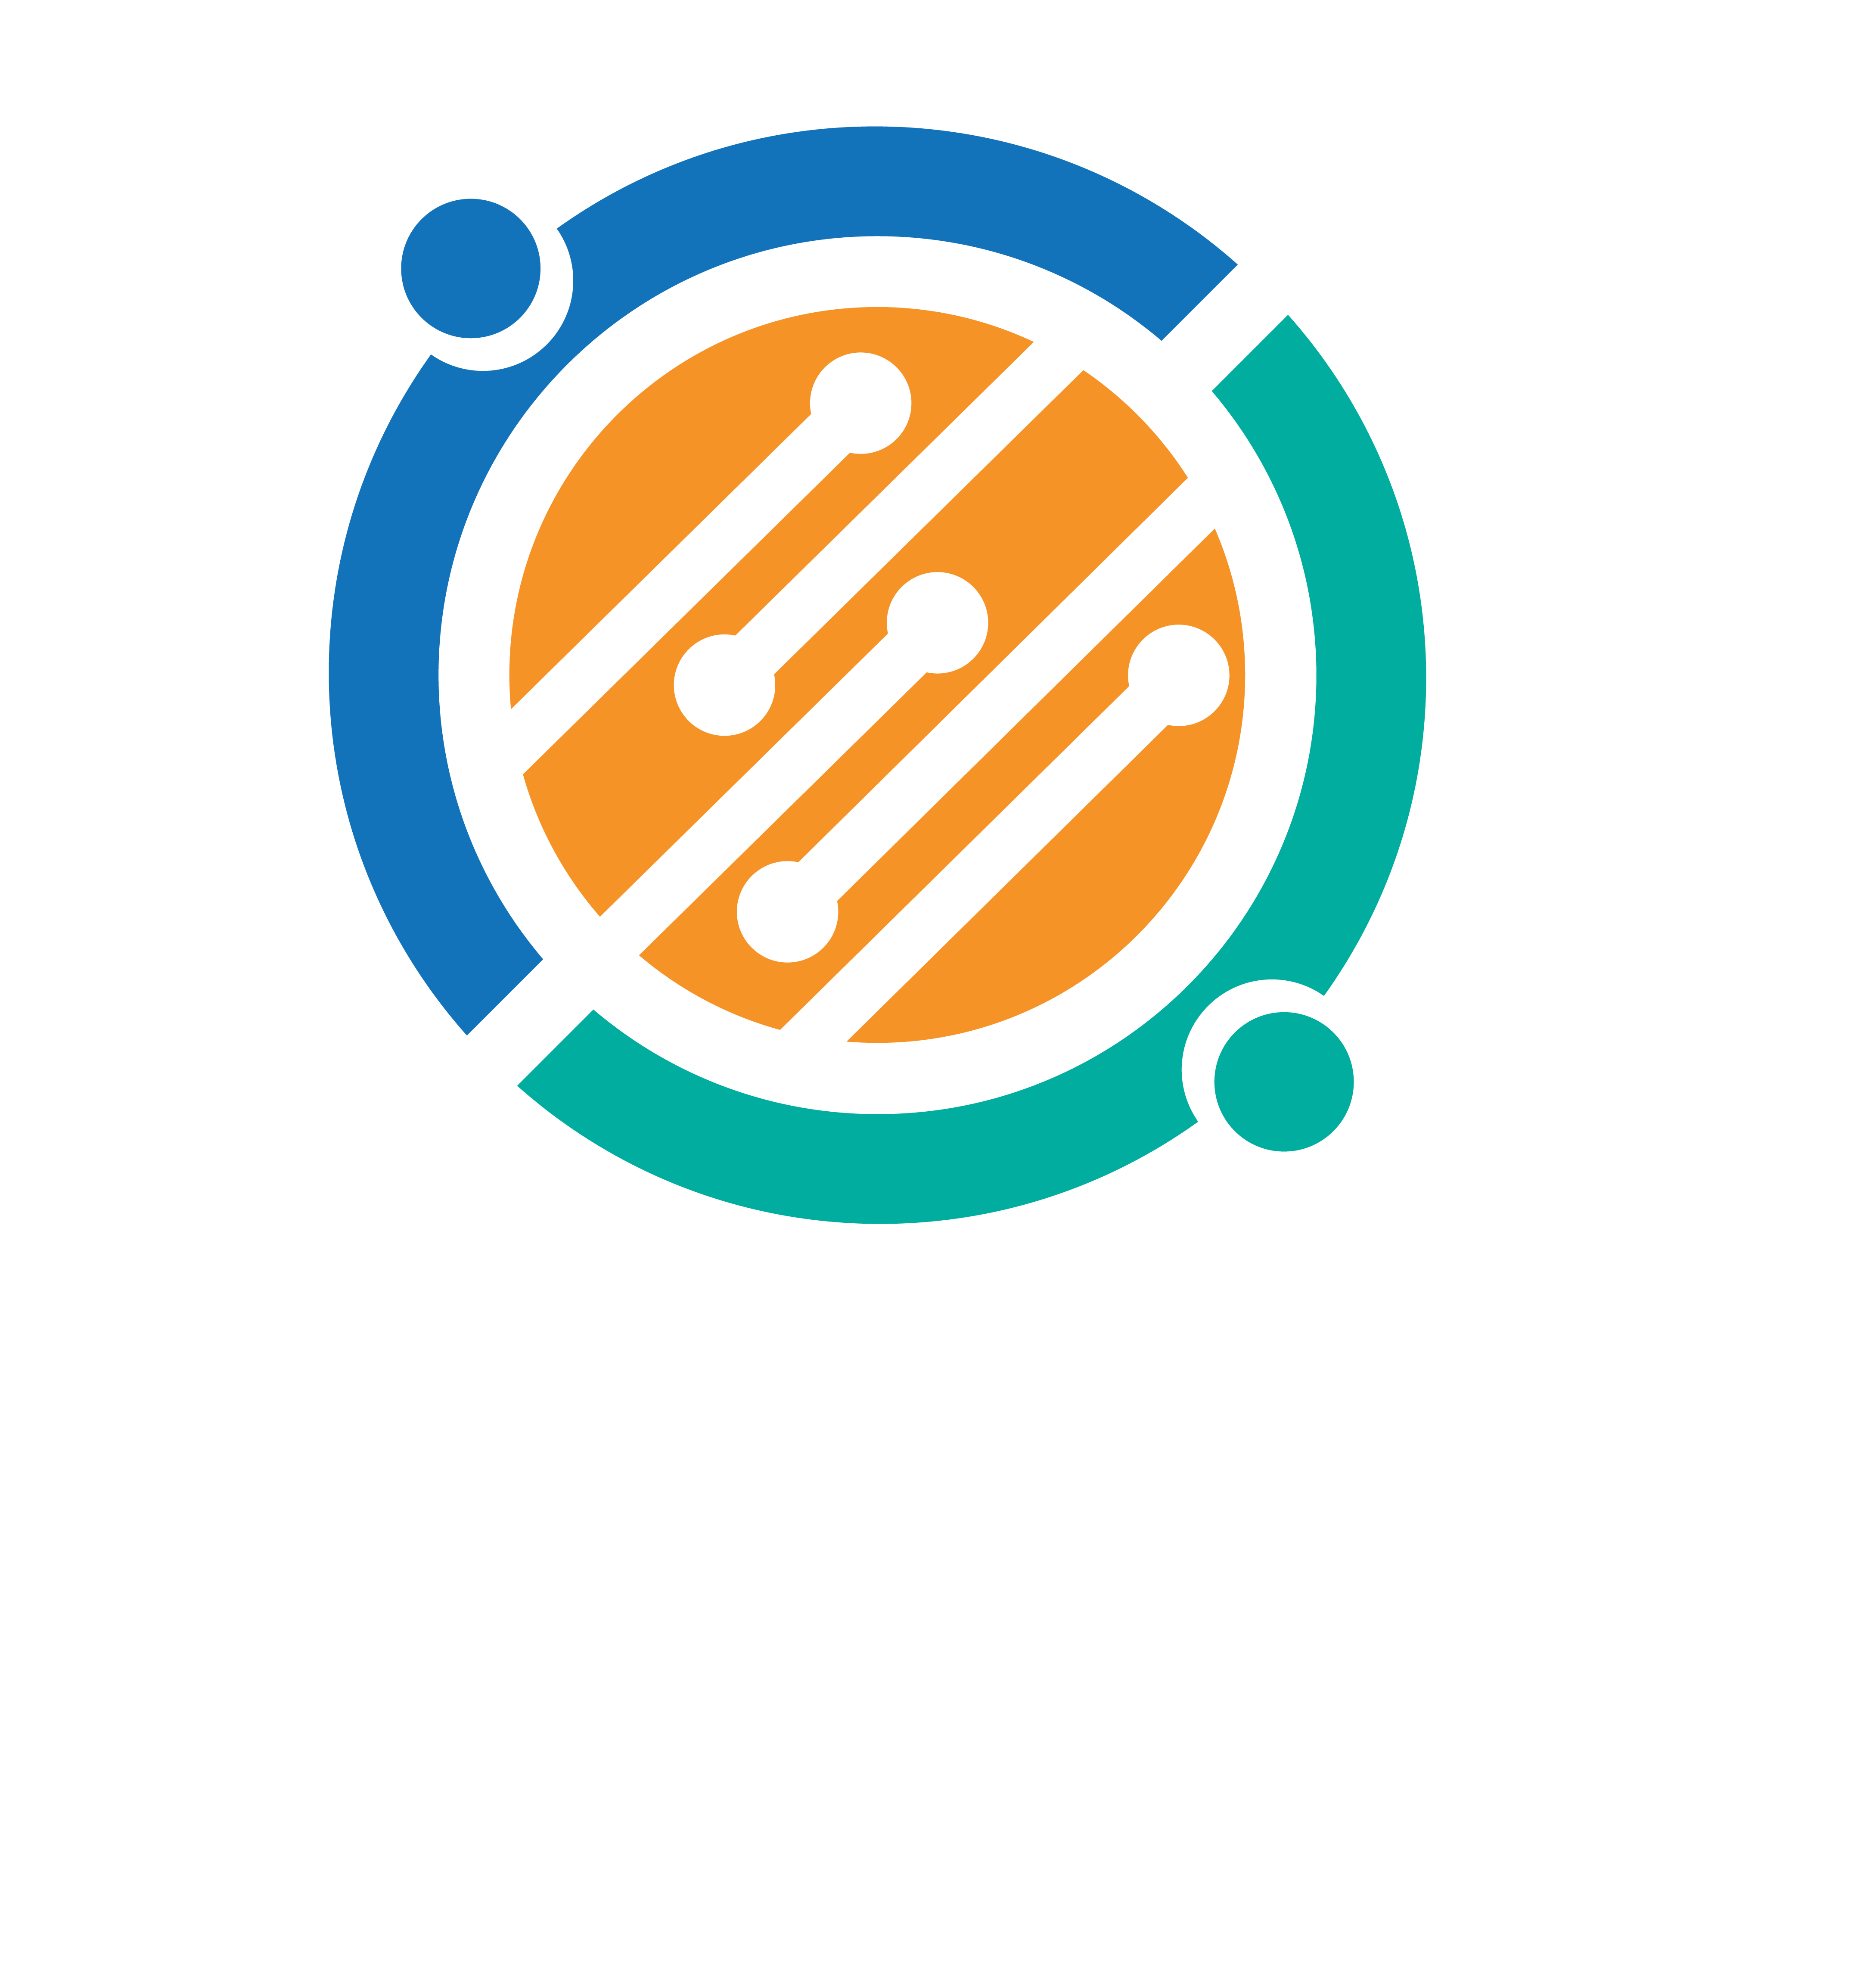 IHRIM